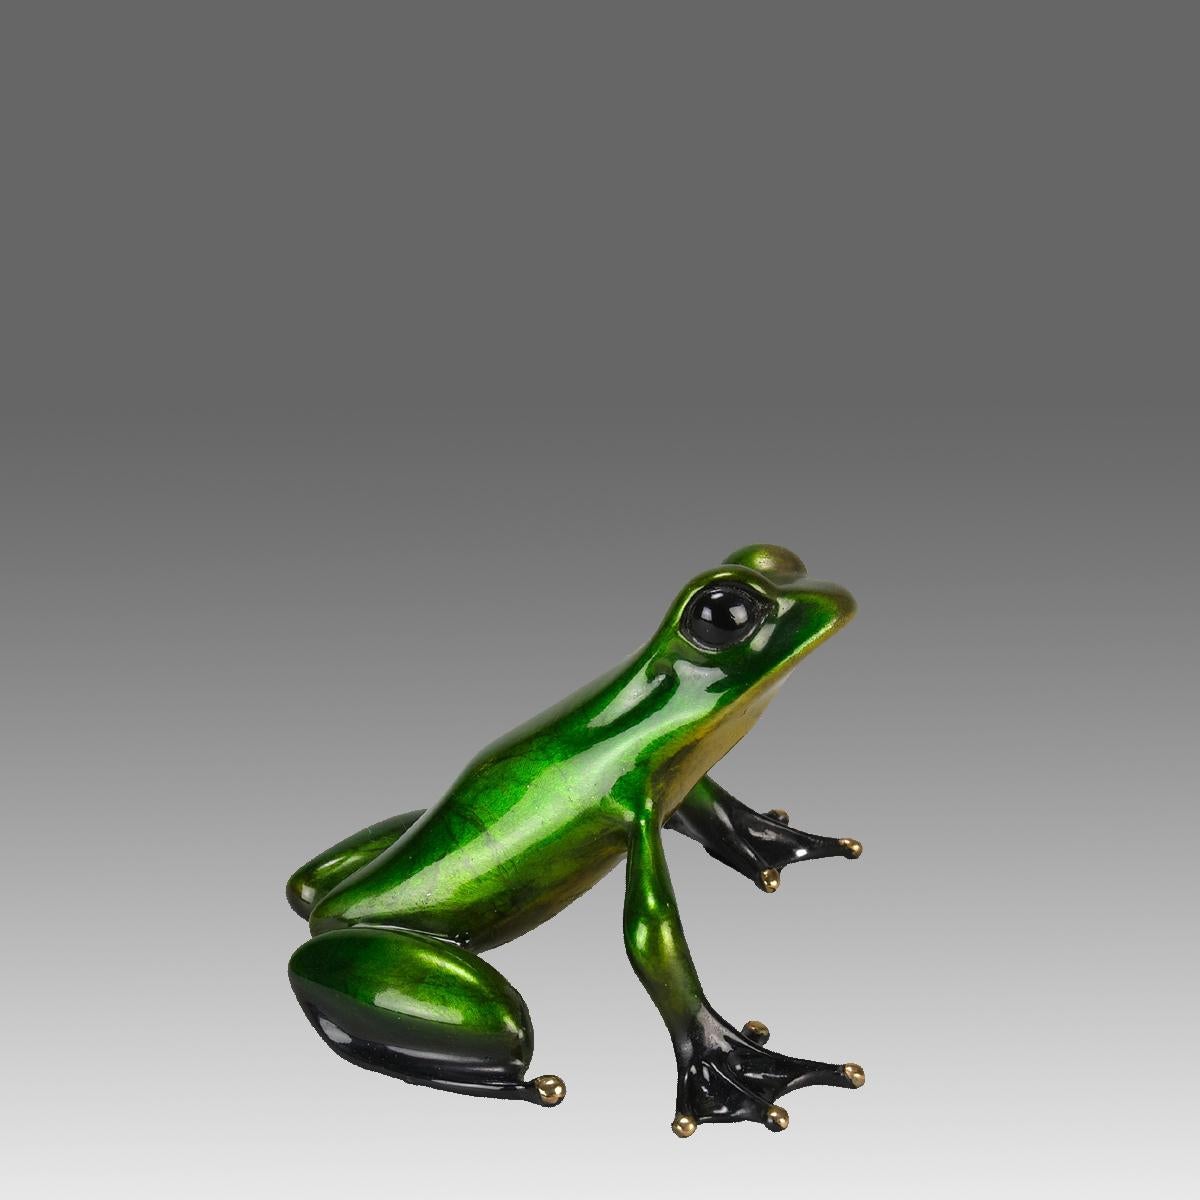 Une belle étude en bronze en édition limitée d'une grenouille vert métallique en position assise, avec de très belles couleurs émaillées et une excellente surface tactile, signée Tim, estampillée 